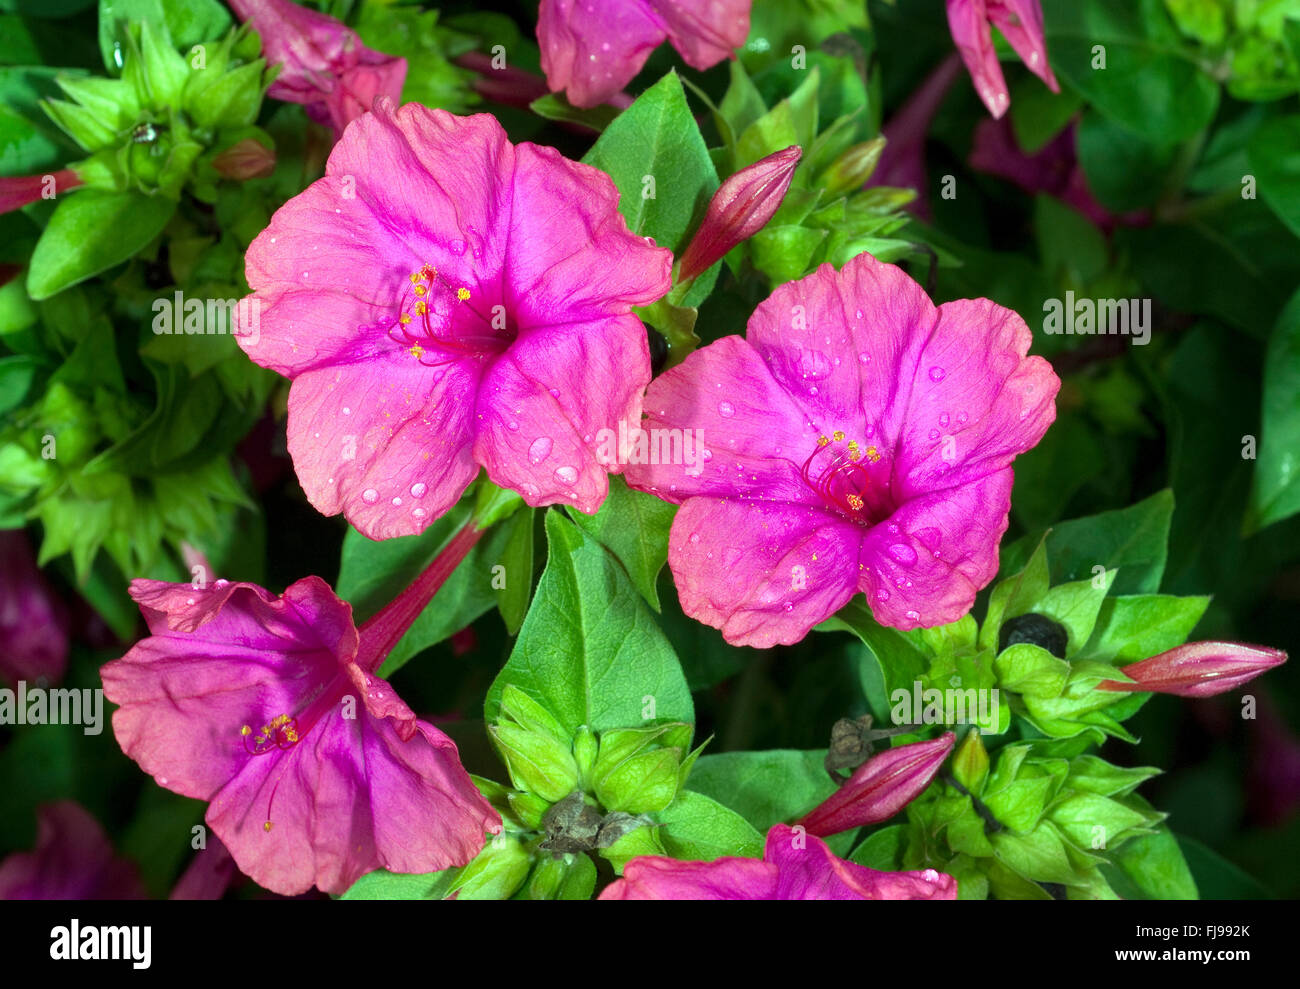 Wunderblume, Mirabilis jalapa Stock Photo